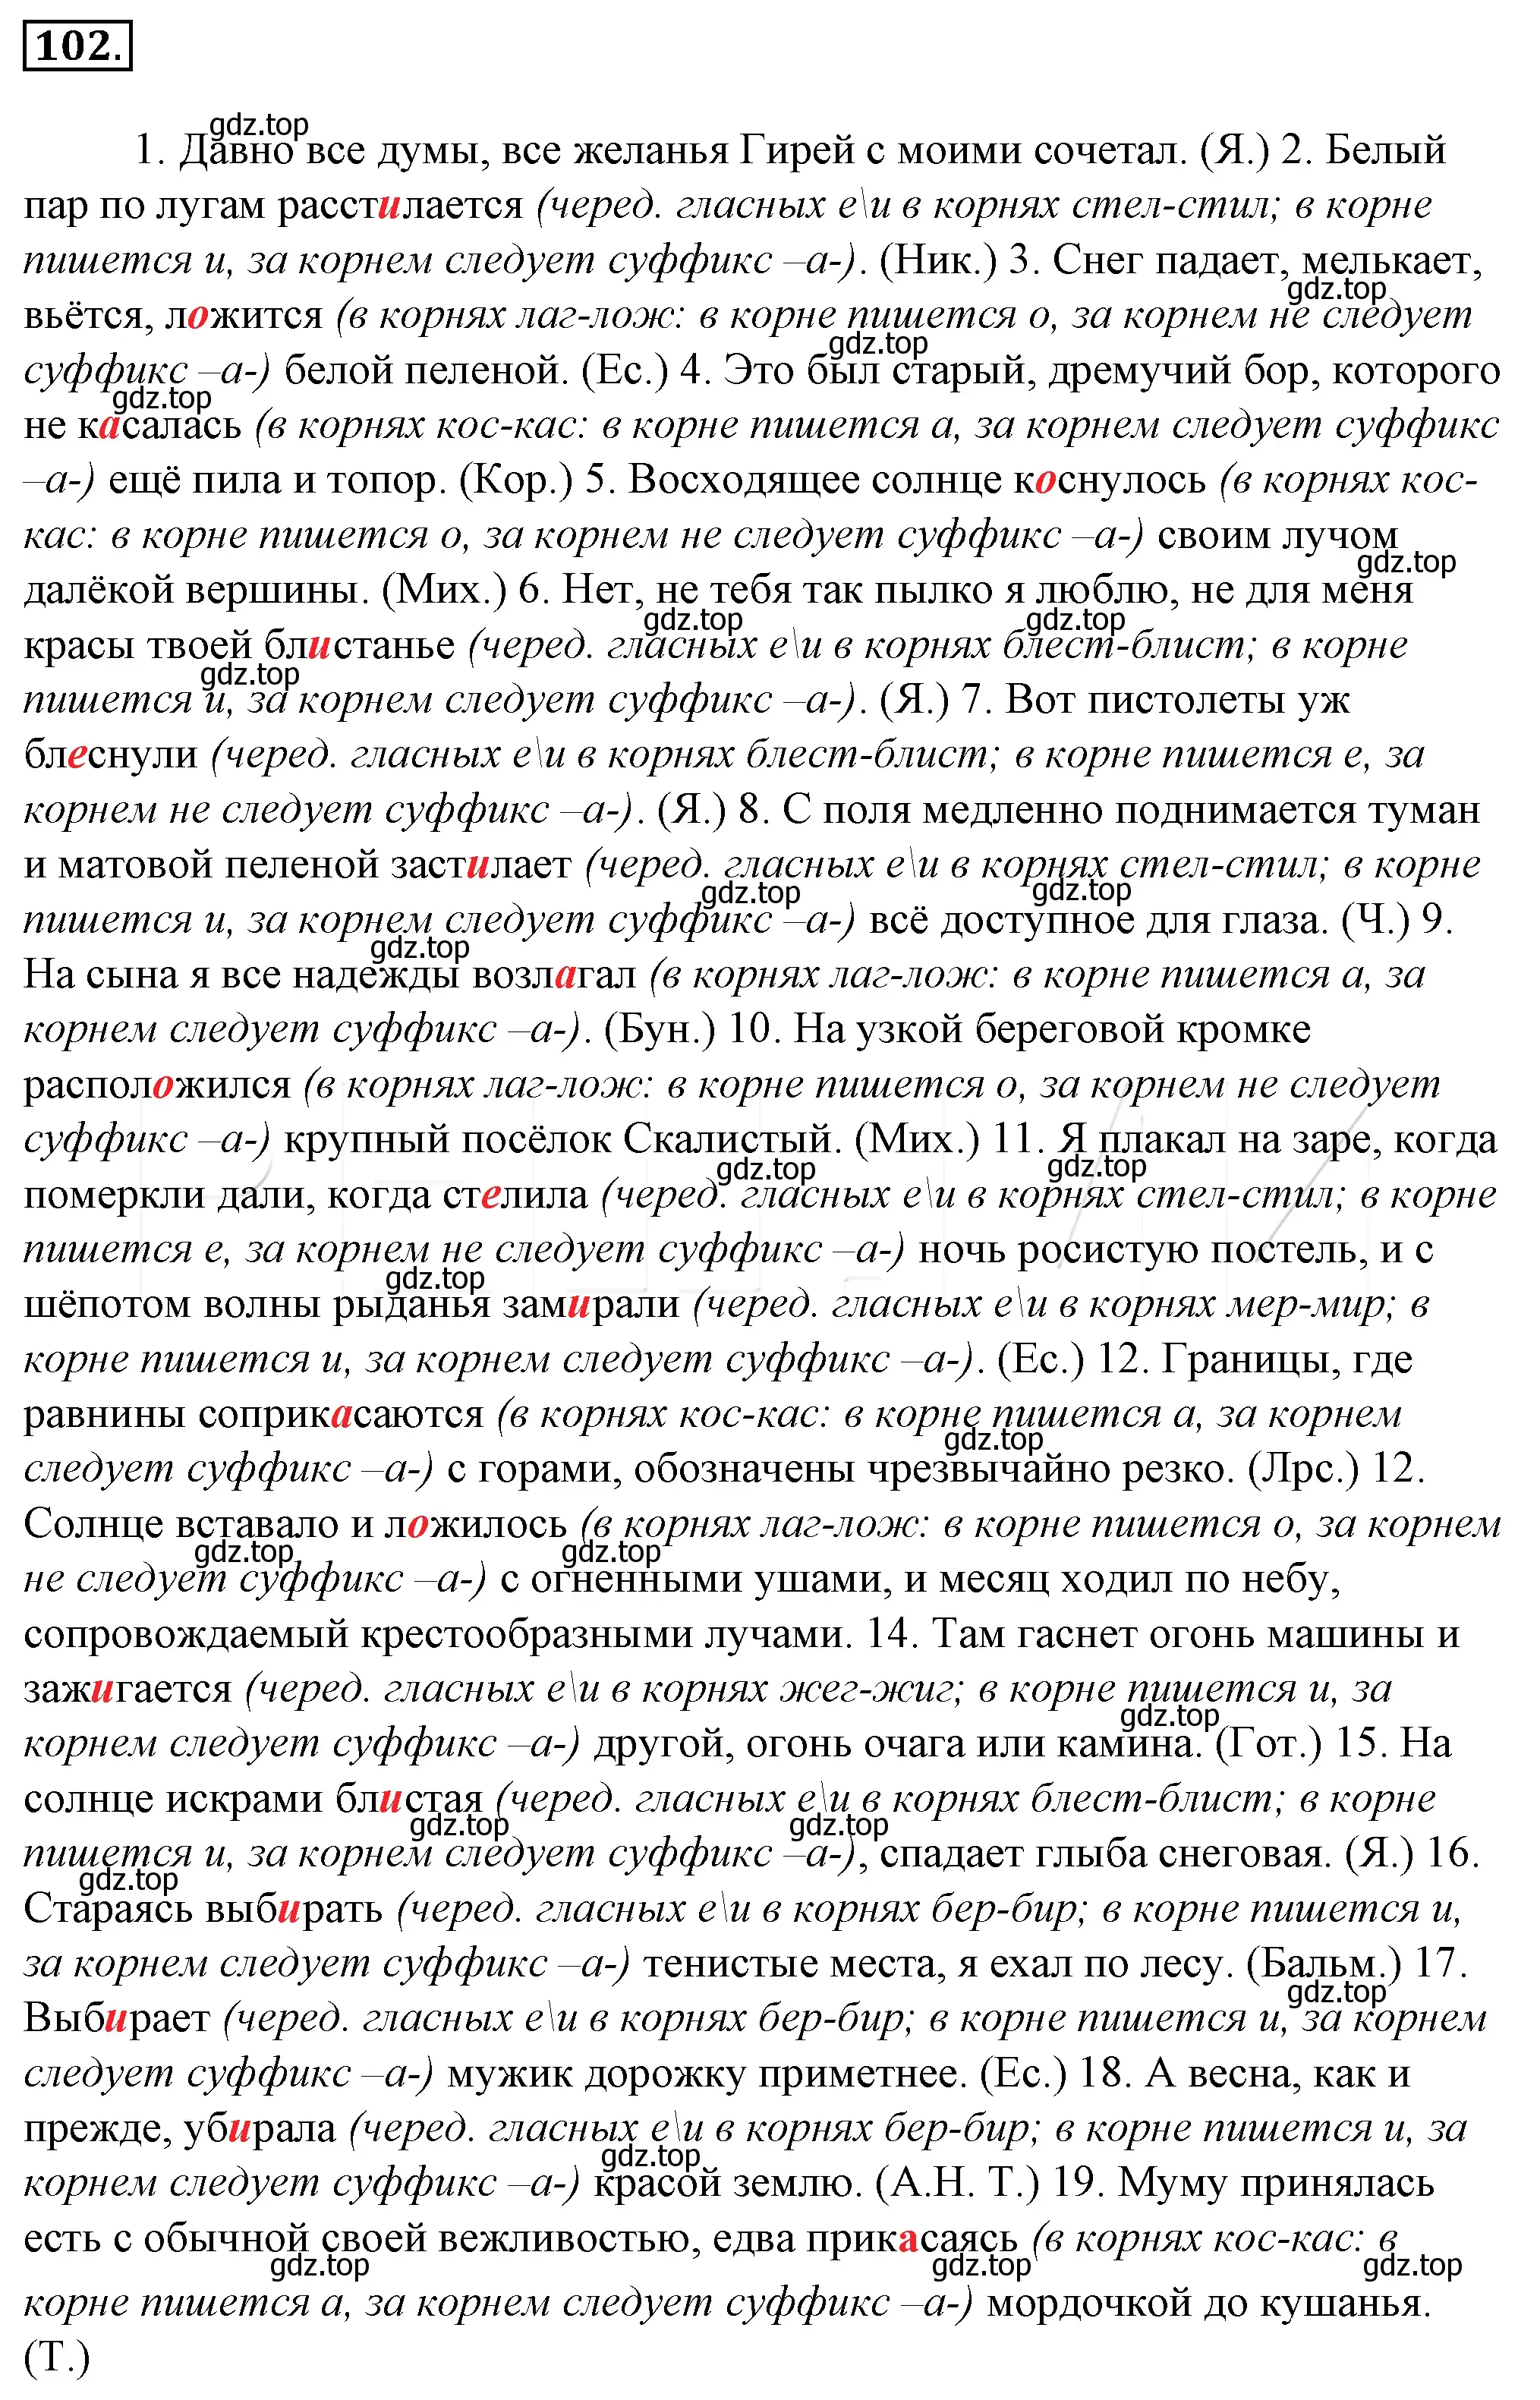 Решение 4. номер 126 (страница 119) гдз по русскому языку 10-11 класс Гольцова, Шамшин, учебник 1 часть